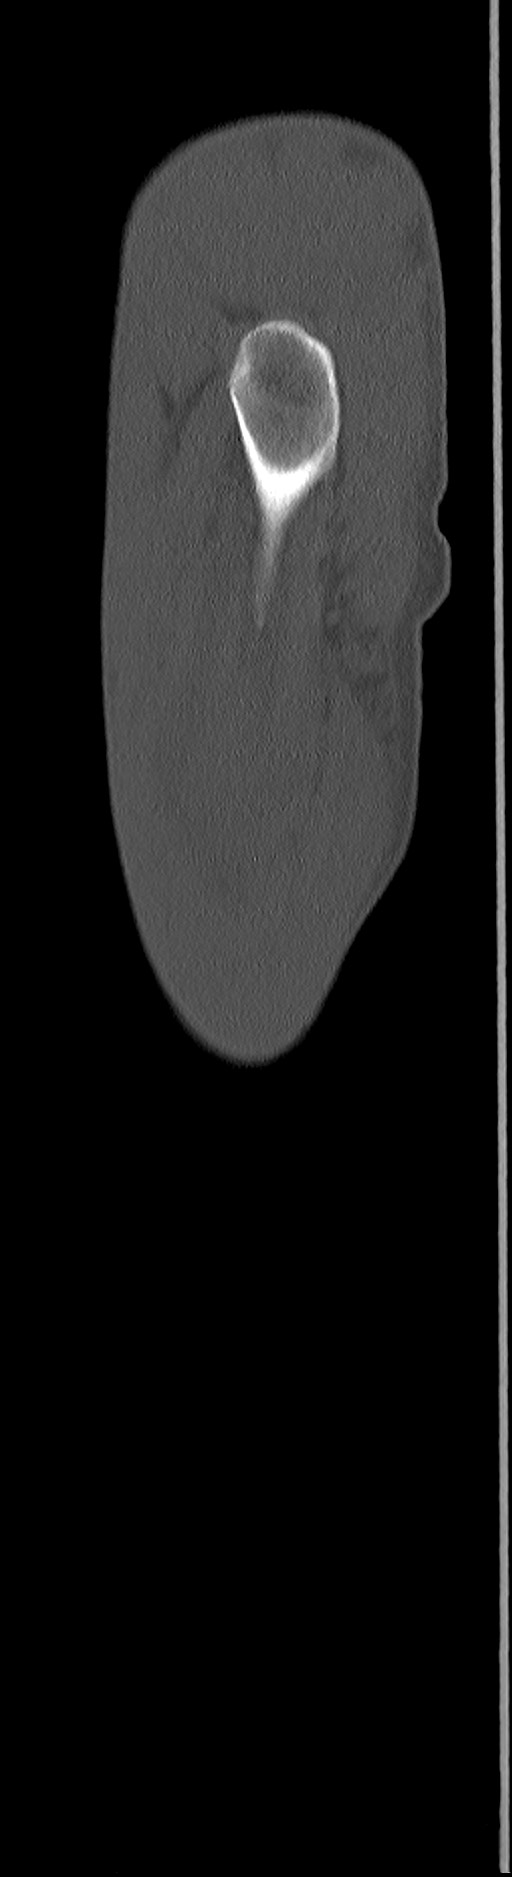 Chronic osteomyelitis (with sequestrum) (Radiopaedia 74813-85822 C 103).jpg